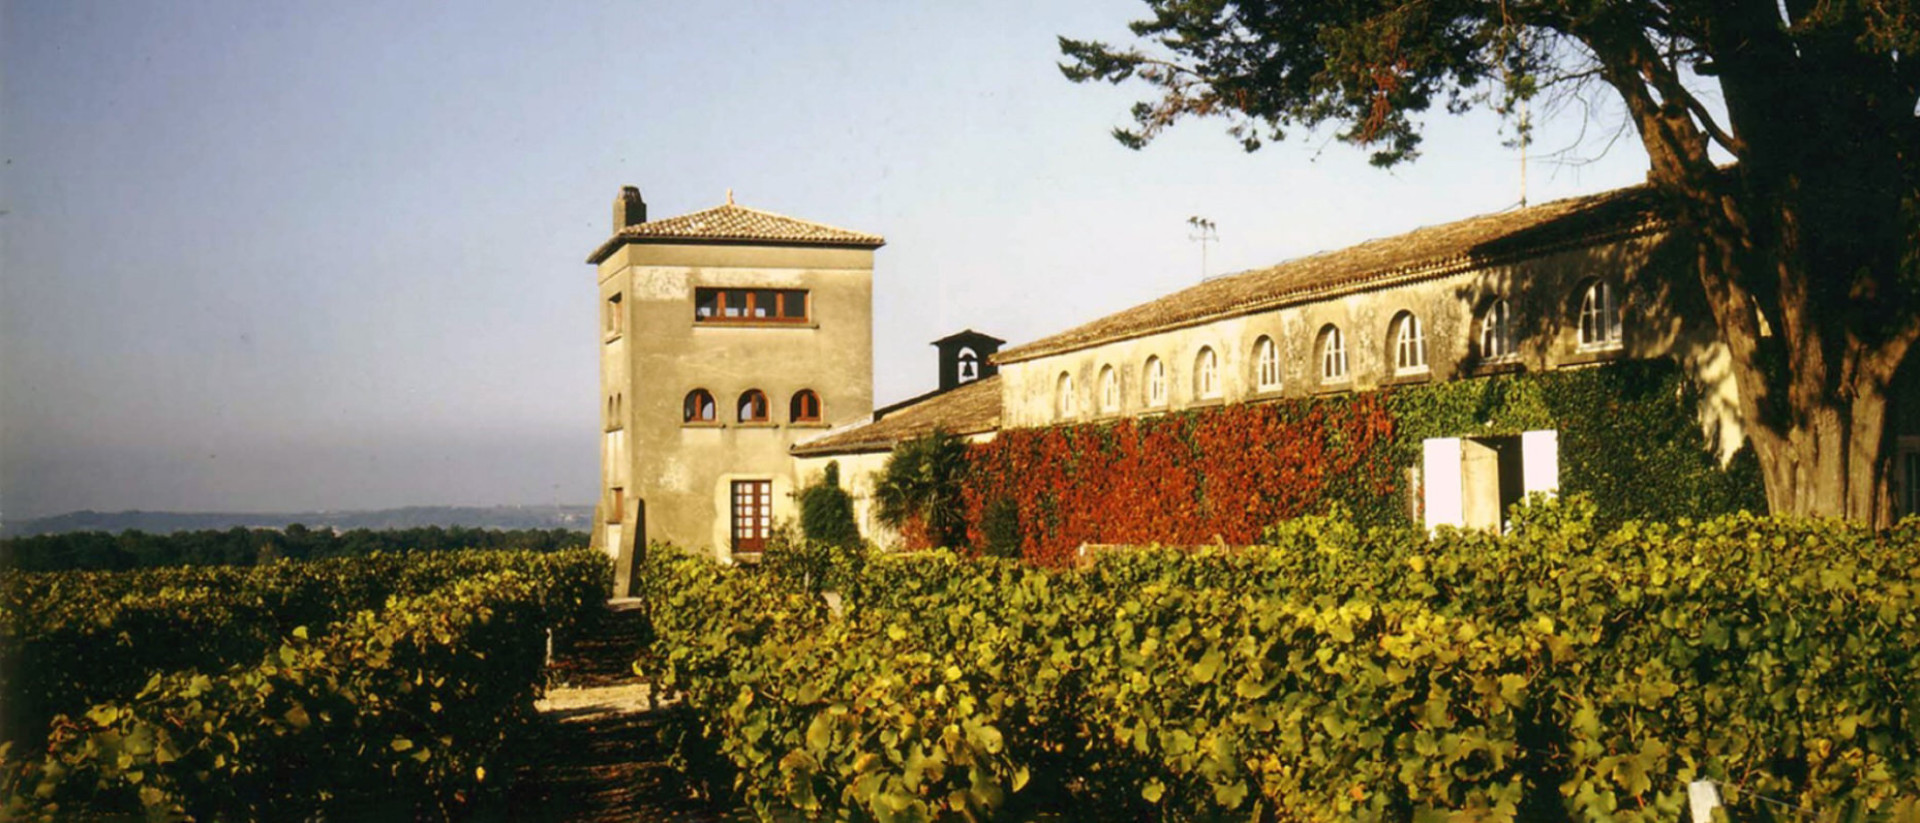 Chateau Rieussec